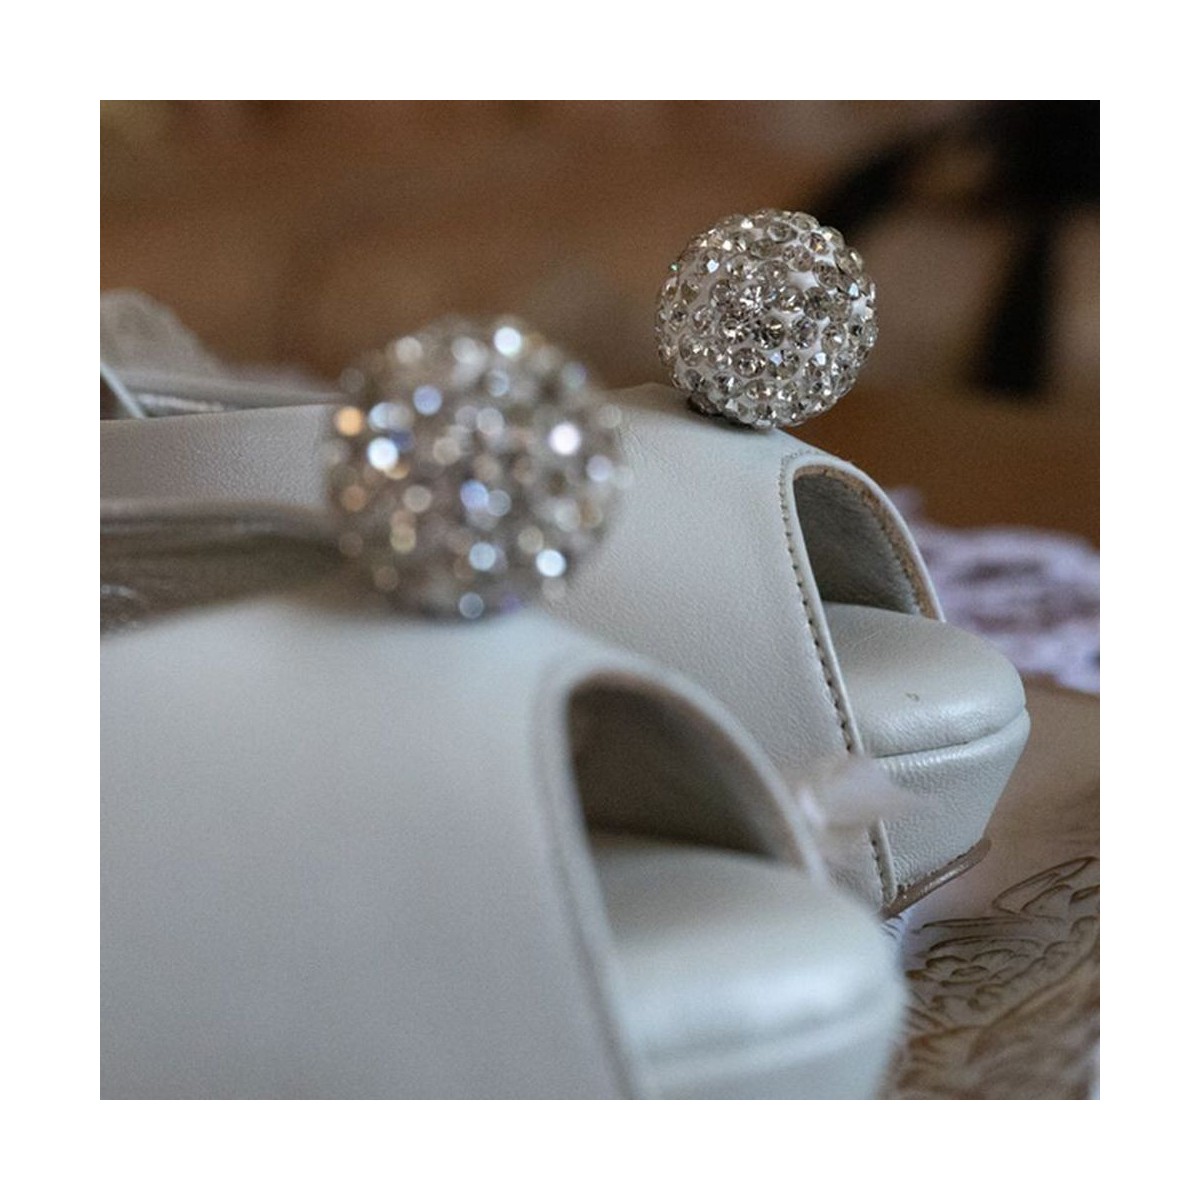 Lou bridal sandals Alessandra